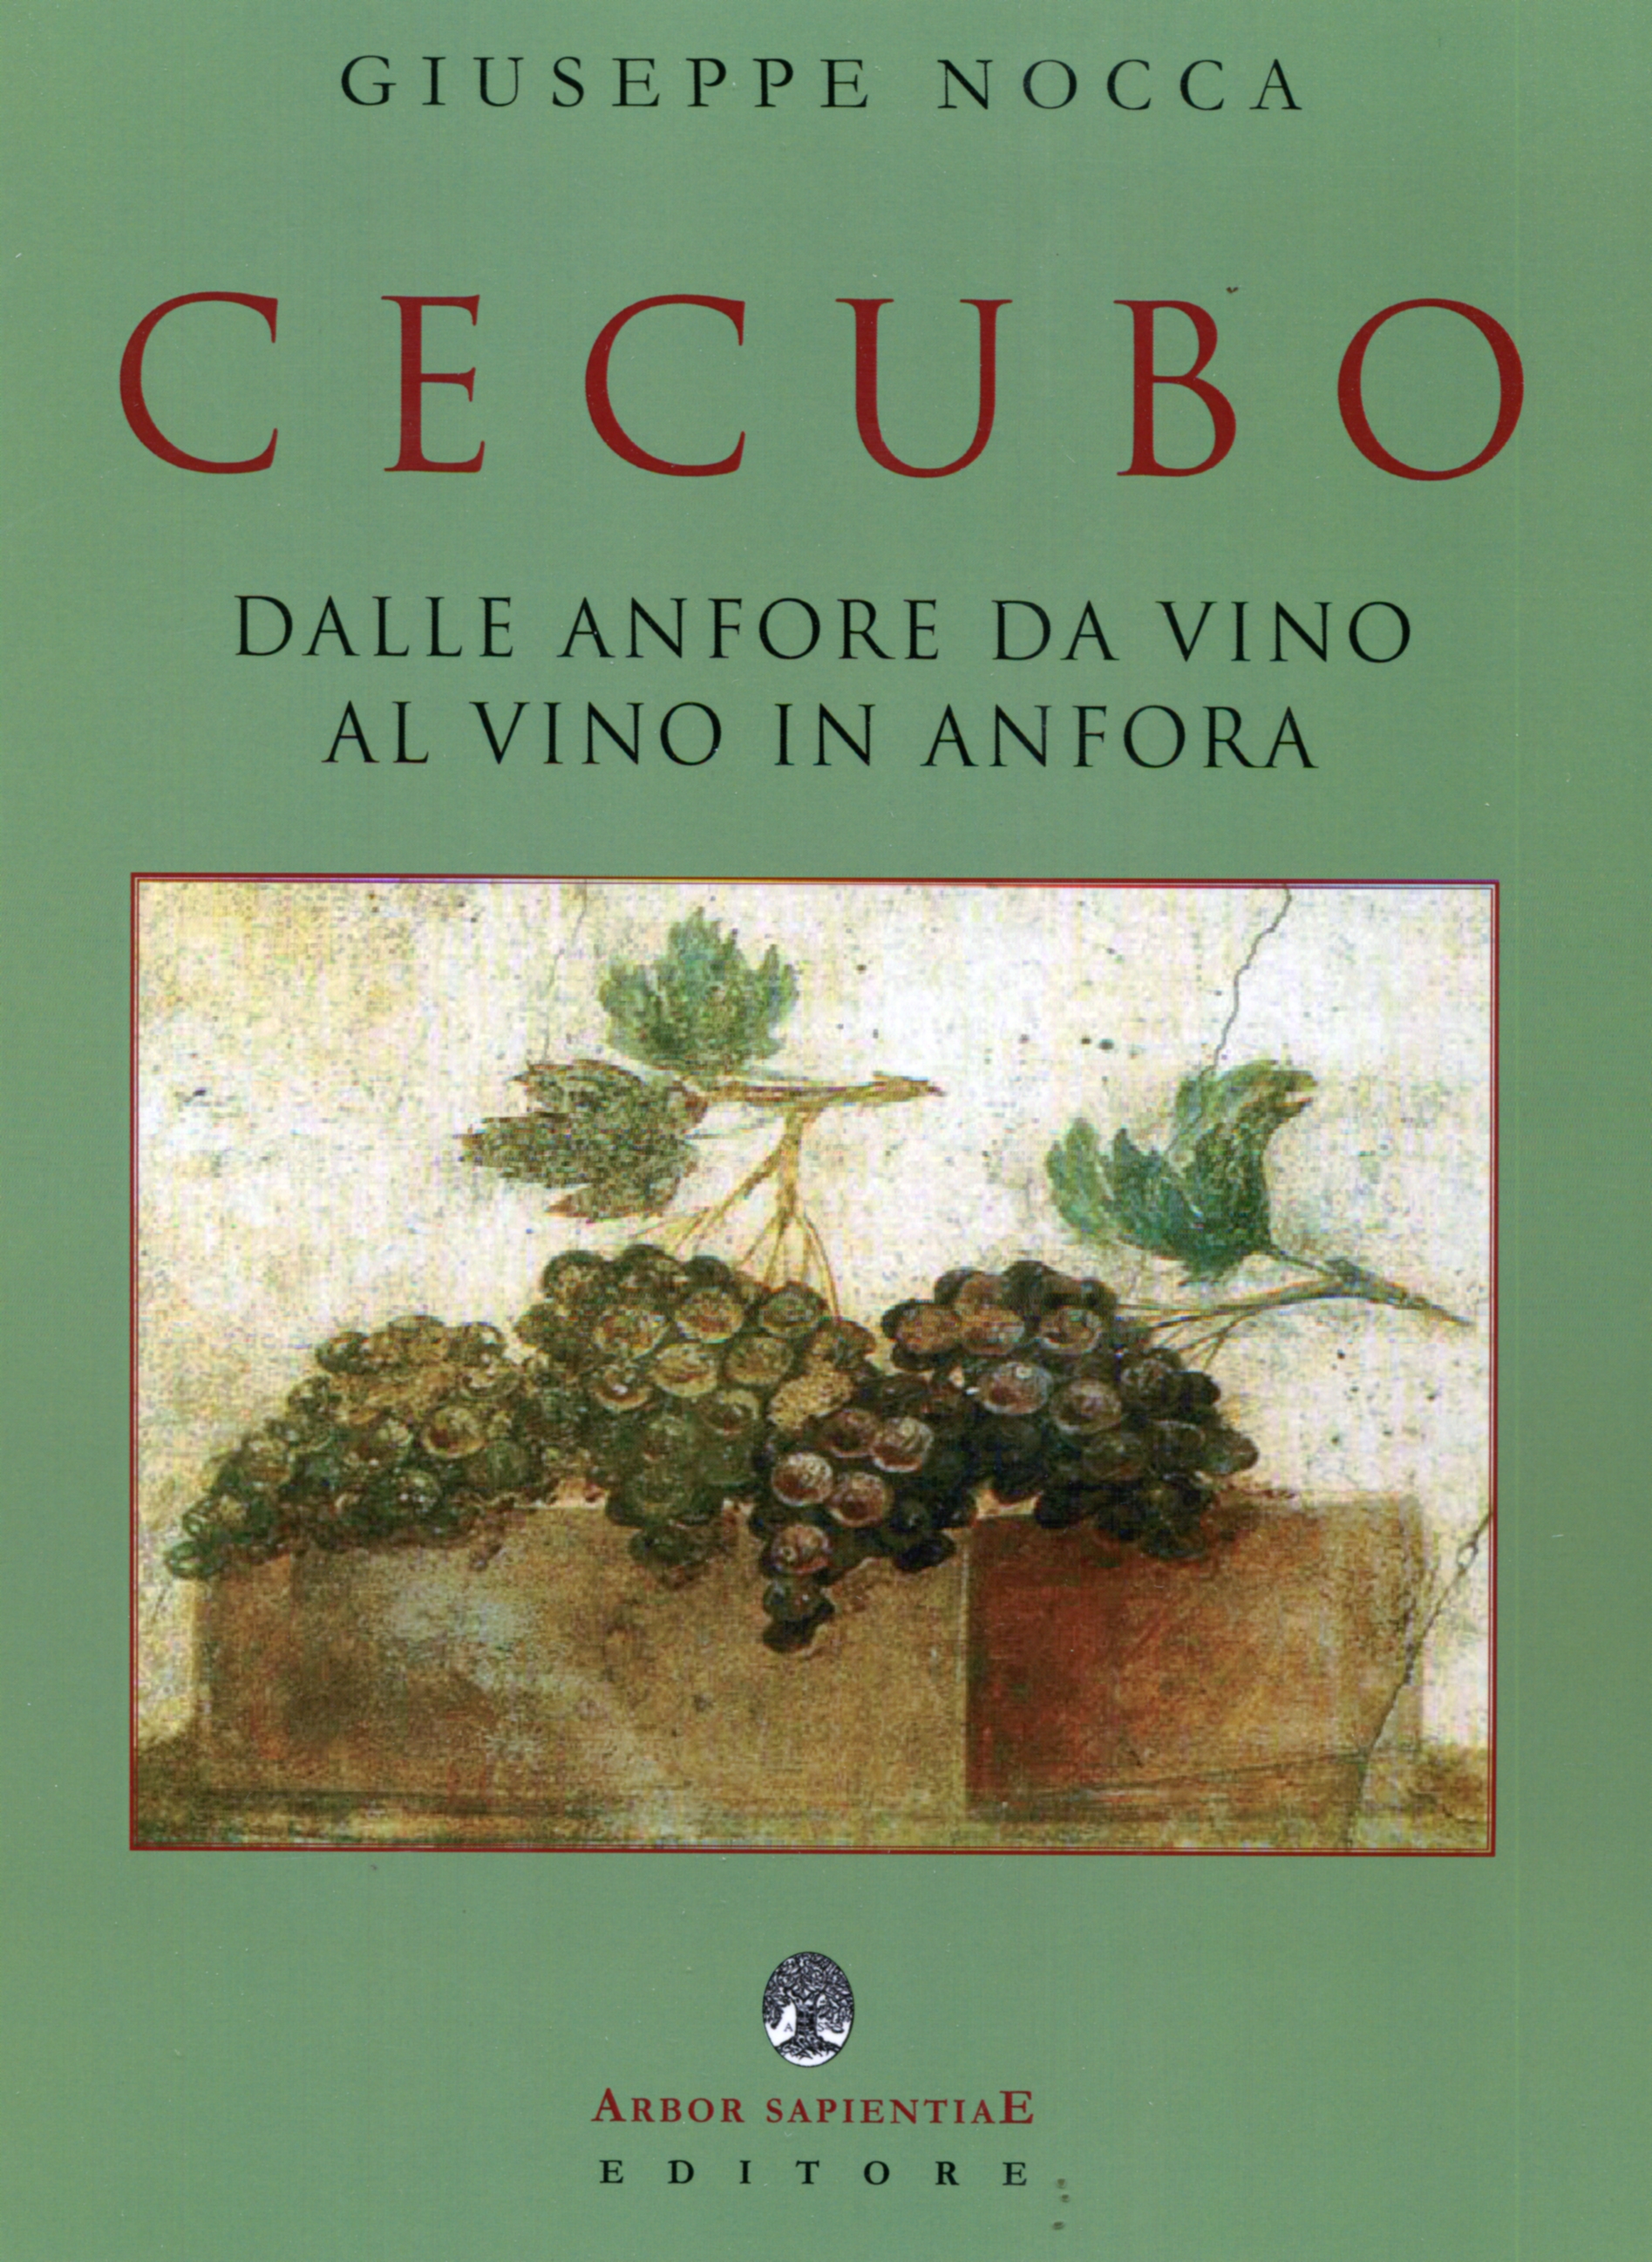 Libri: “Cecubo” dalle anfore da vino al vino in anfora di Giuseppe Nocca